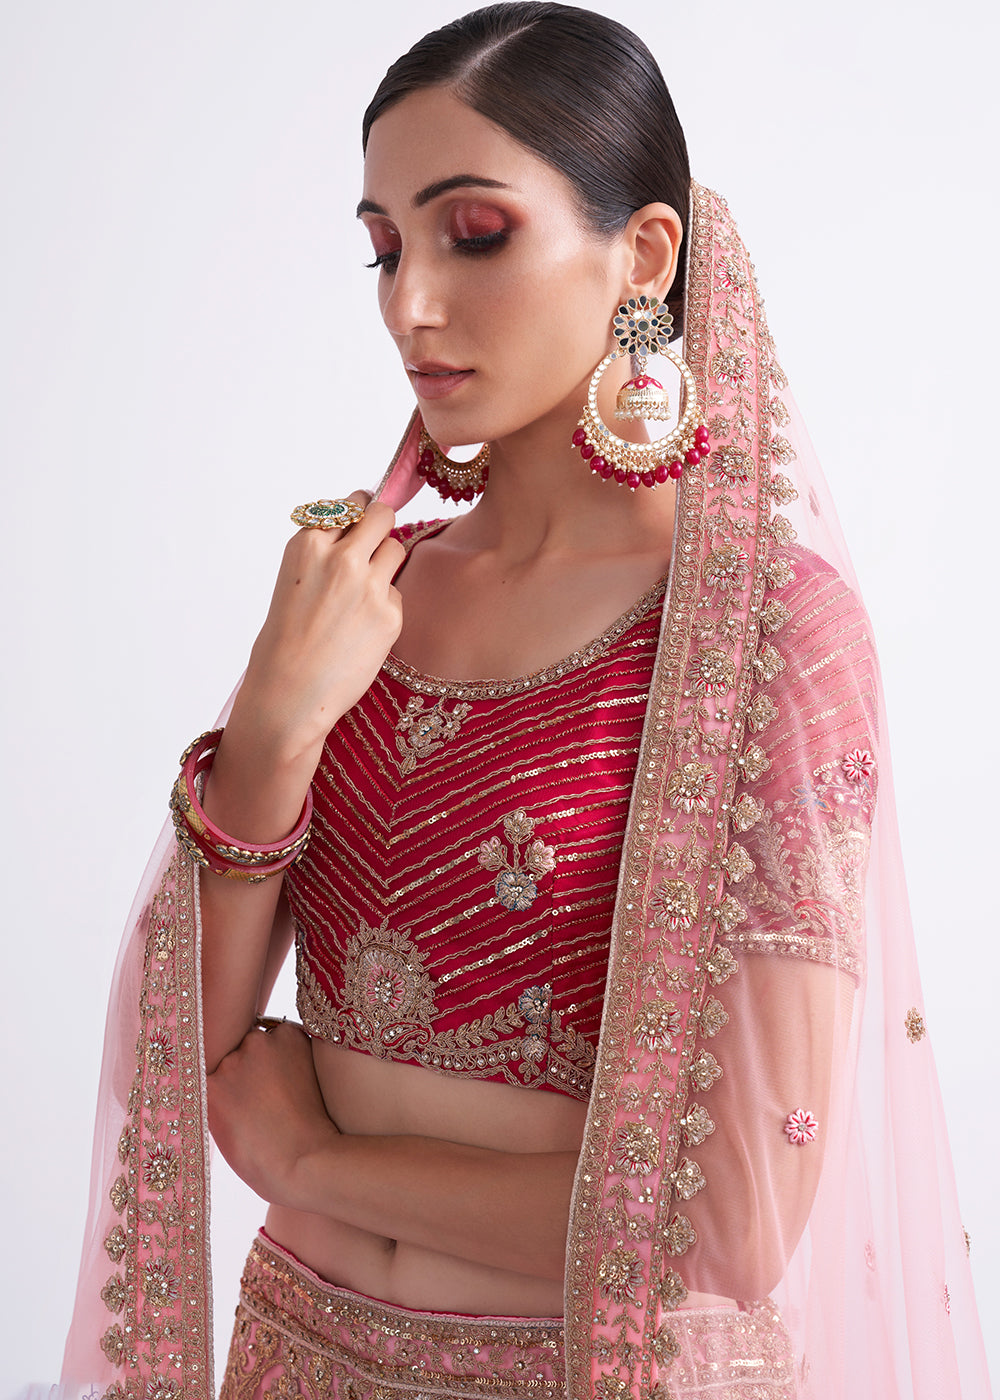 Buy Now Shaded Rani Pink Wedding Style Designer Bridal Lehenga Choli Online in Canada, UK, USA & Worldwide at Empress Clothing.